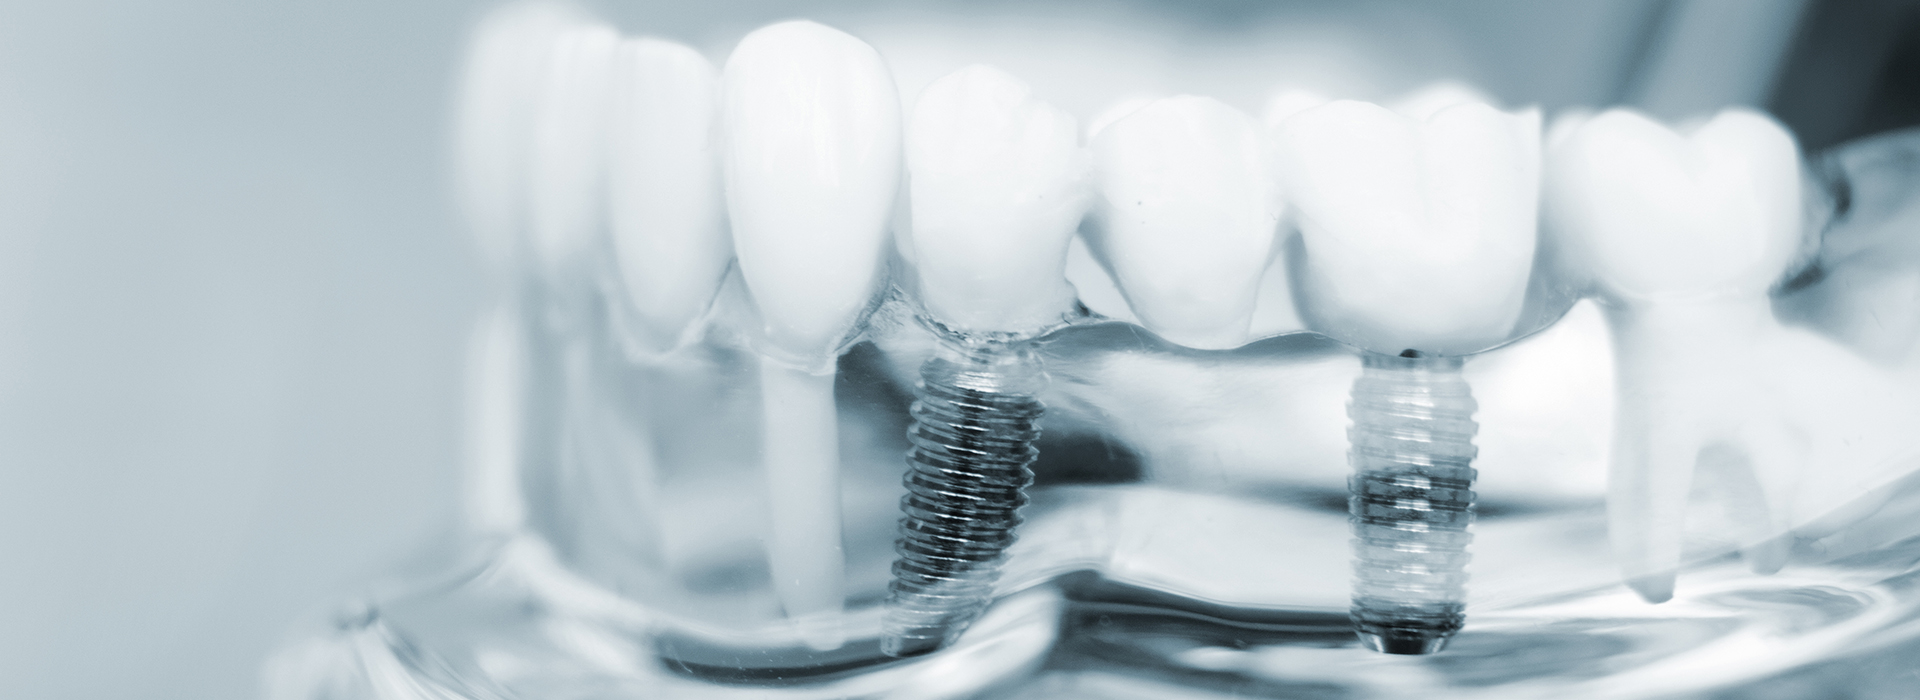 Village Dental | Dental Bridges, Veneers and Implant Dentistry